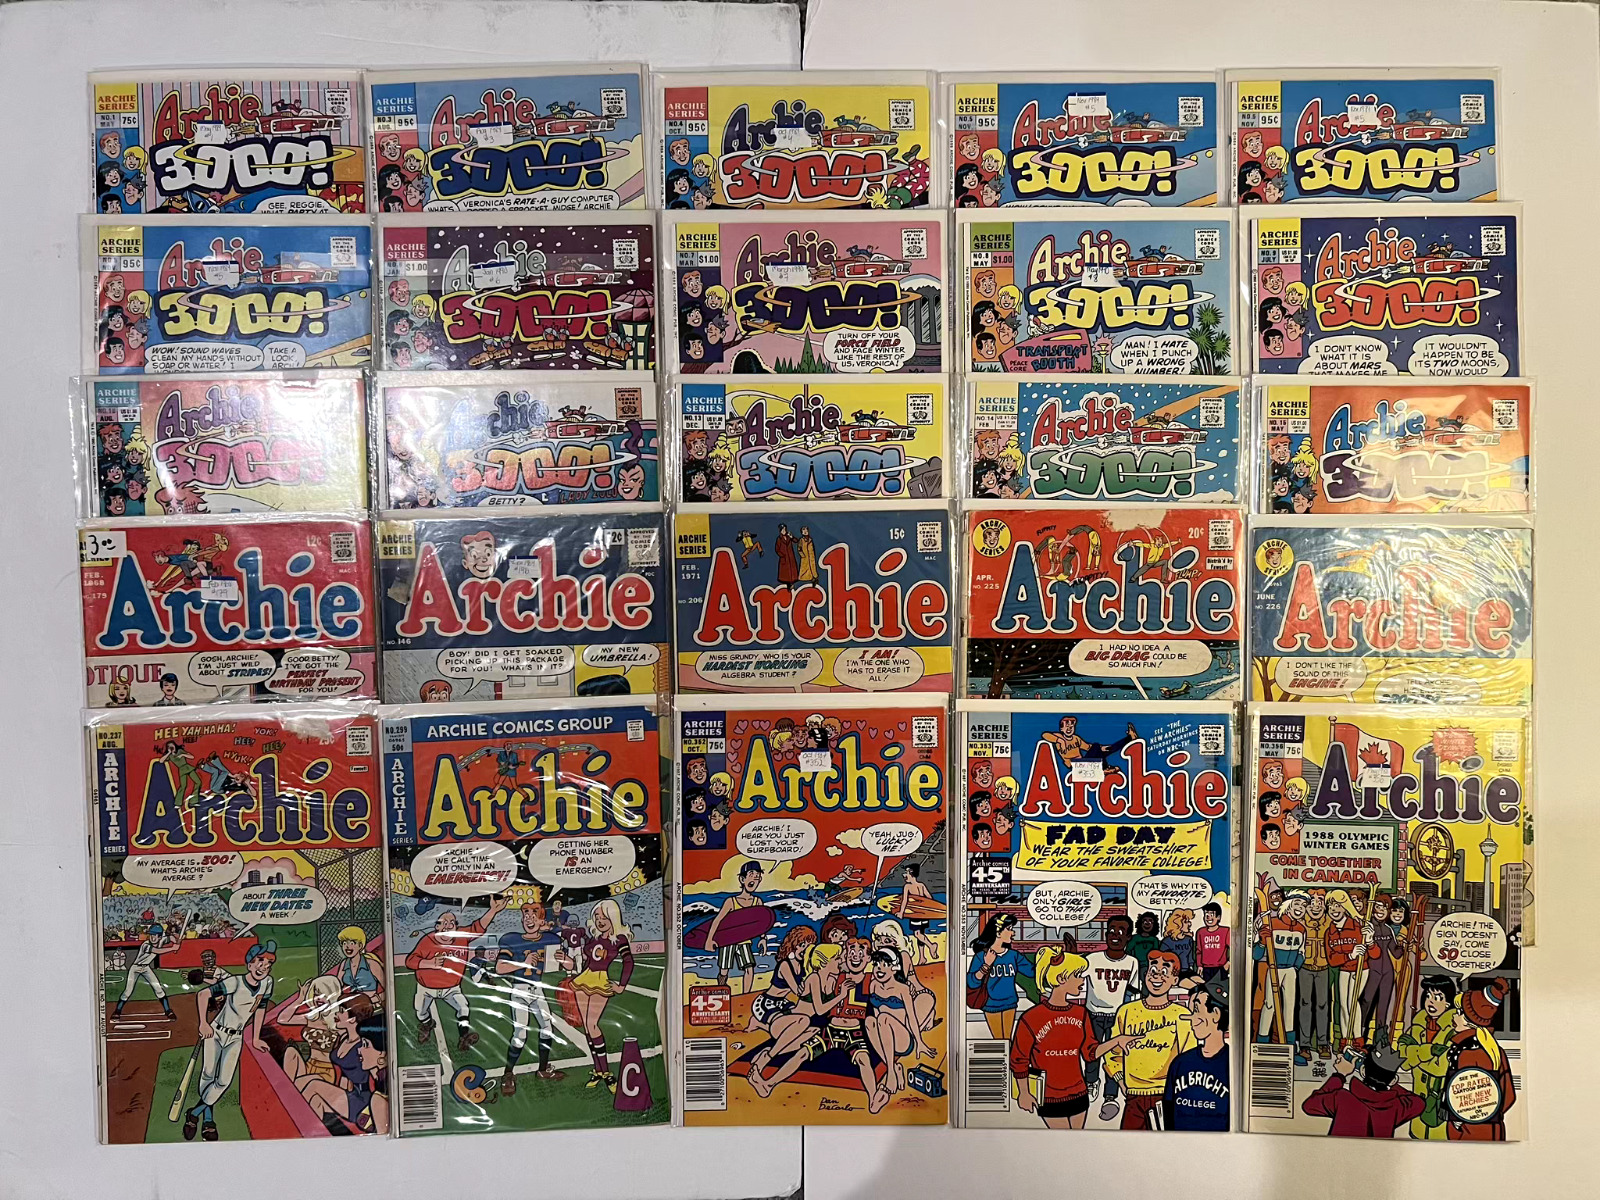 Archie Comics Silver, Bronze age Lot (50) #146-387* NM-VG 1964 + Archie 3000 Lot